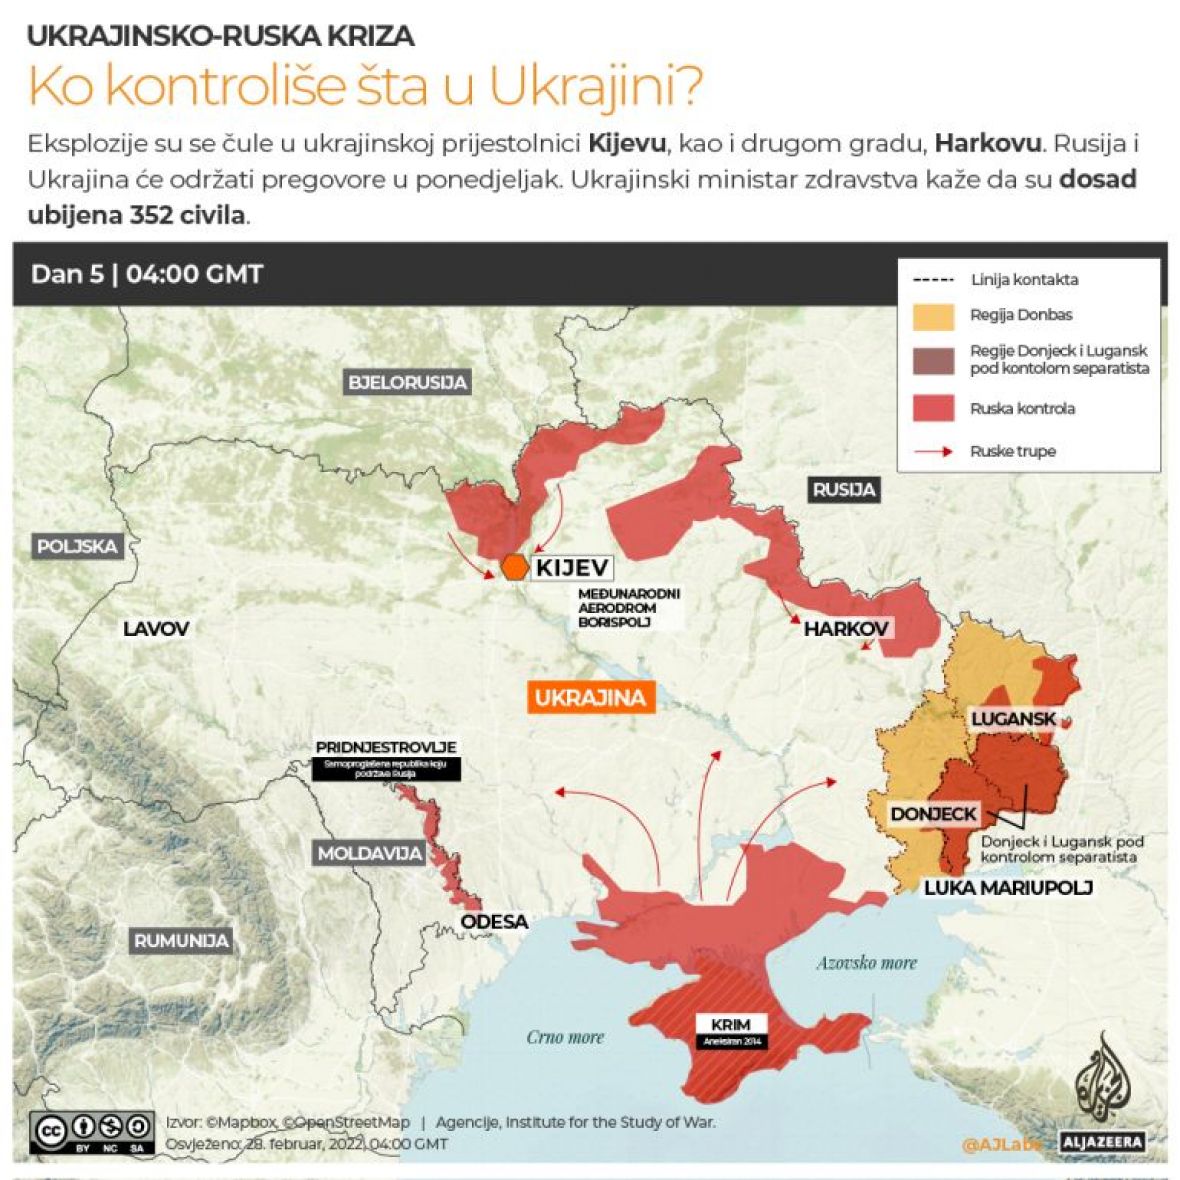 Mapa - ko i šta kontrolira u Ukrajiniji - undefined